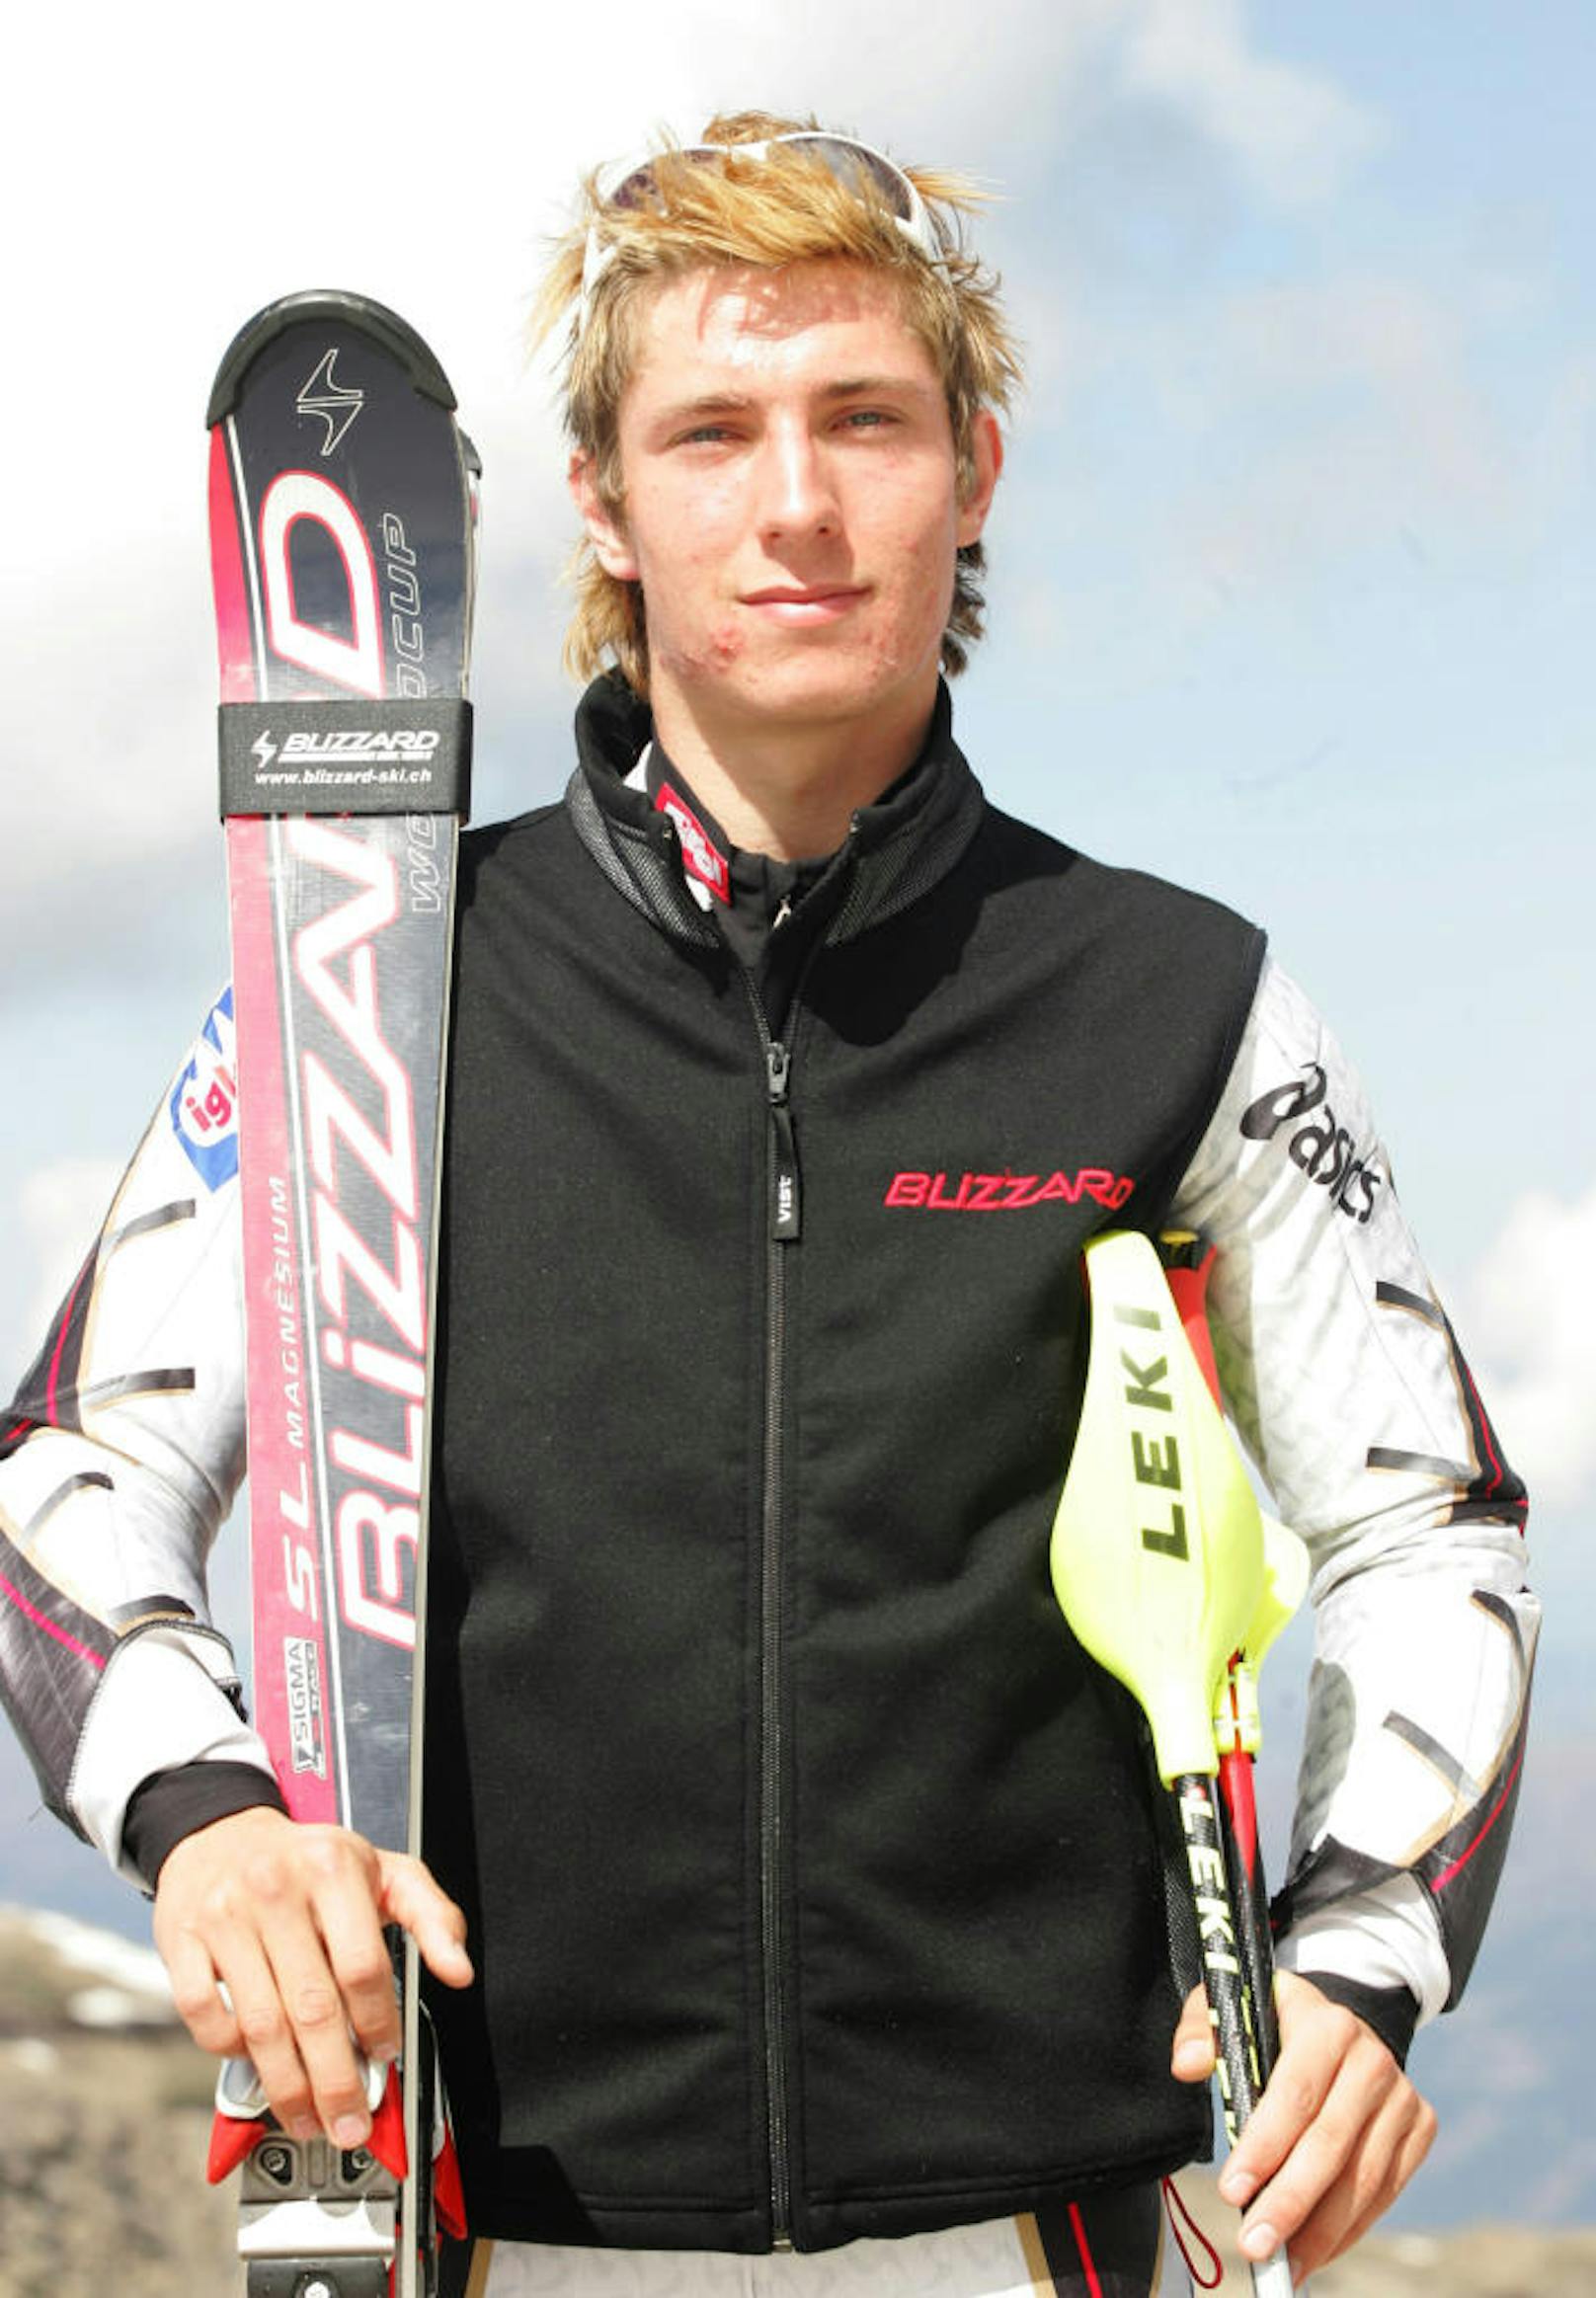 Heute ist Marcel Hirscher das Aushängeschild der Skimarke Atomic. Doch das war nicht immer so. Seine ersten Erfolge im Juniorenbereich fuhr der Salzburger noch auf Blizzard ein. 